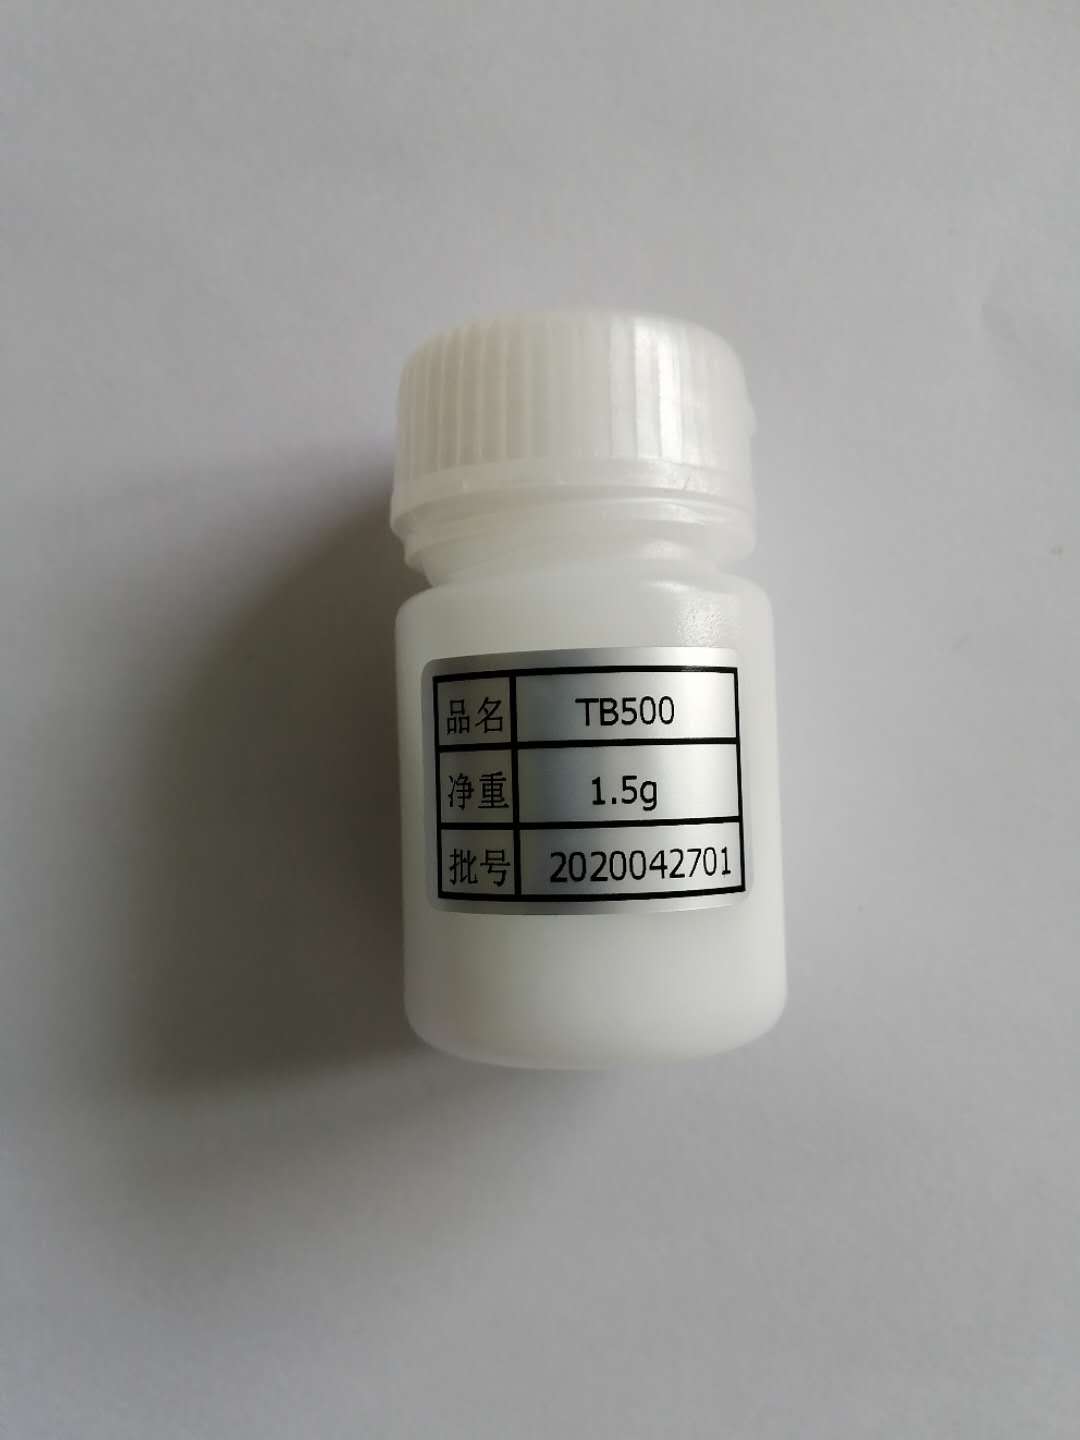 TB500 thymosine bêta 4 peptides TB500 